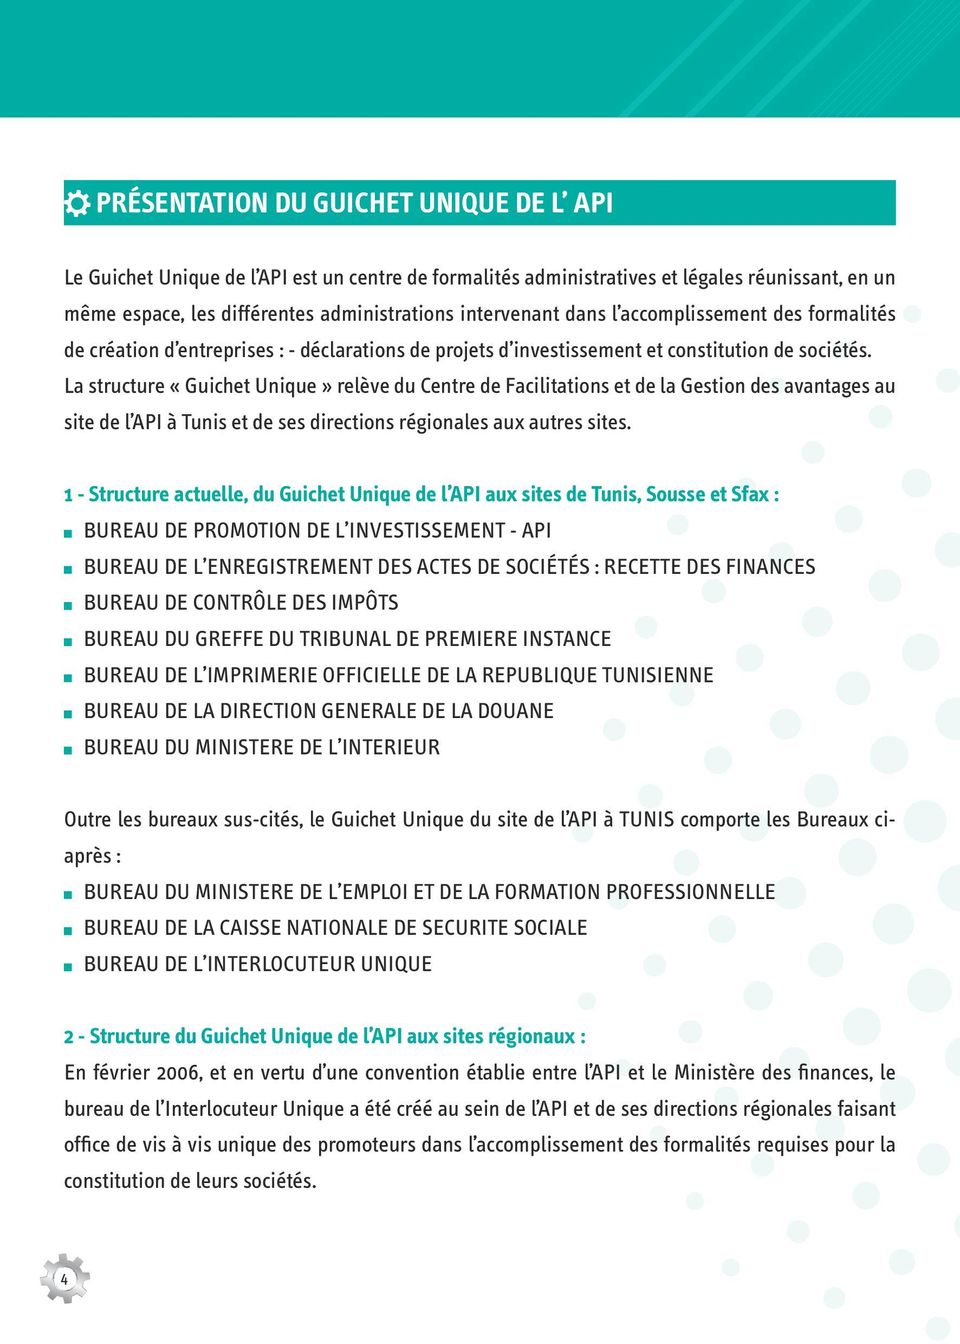 La structure «Guichet Unique» relève du Centre de Facilitations et de la Gestion des avantages au site de l API à Tunis et de ses directions régionales aux autres sites.